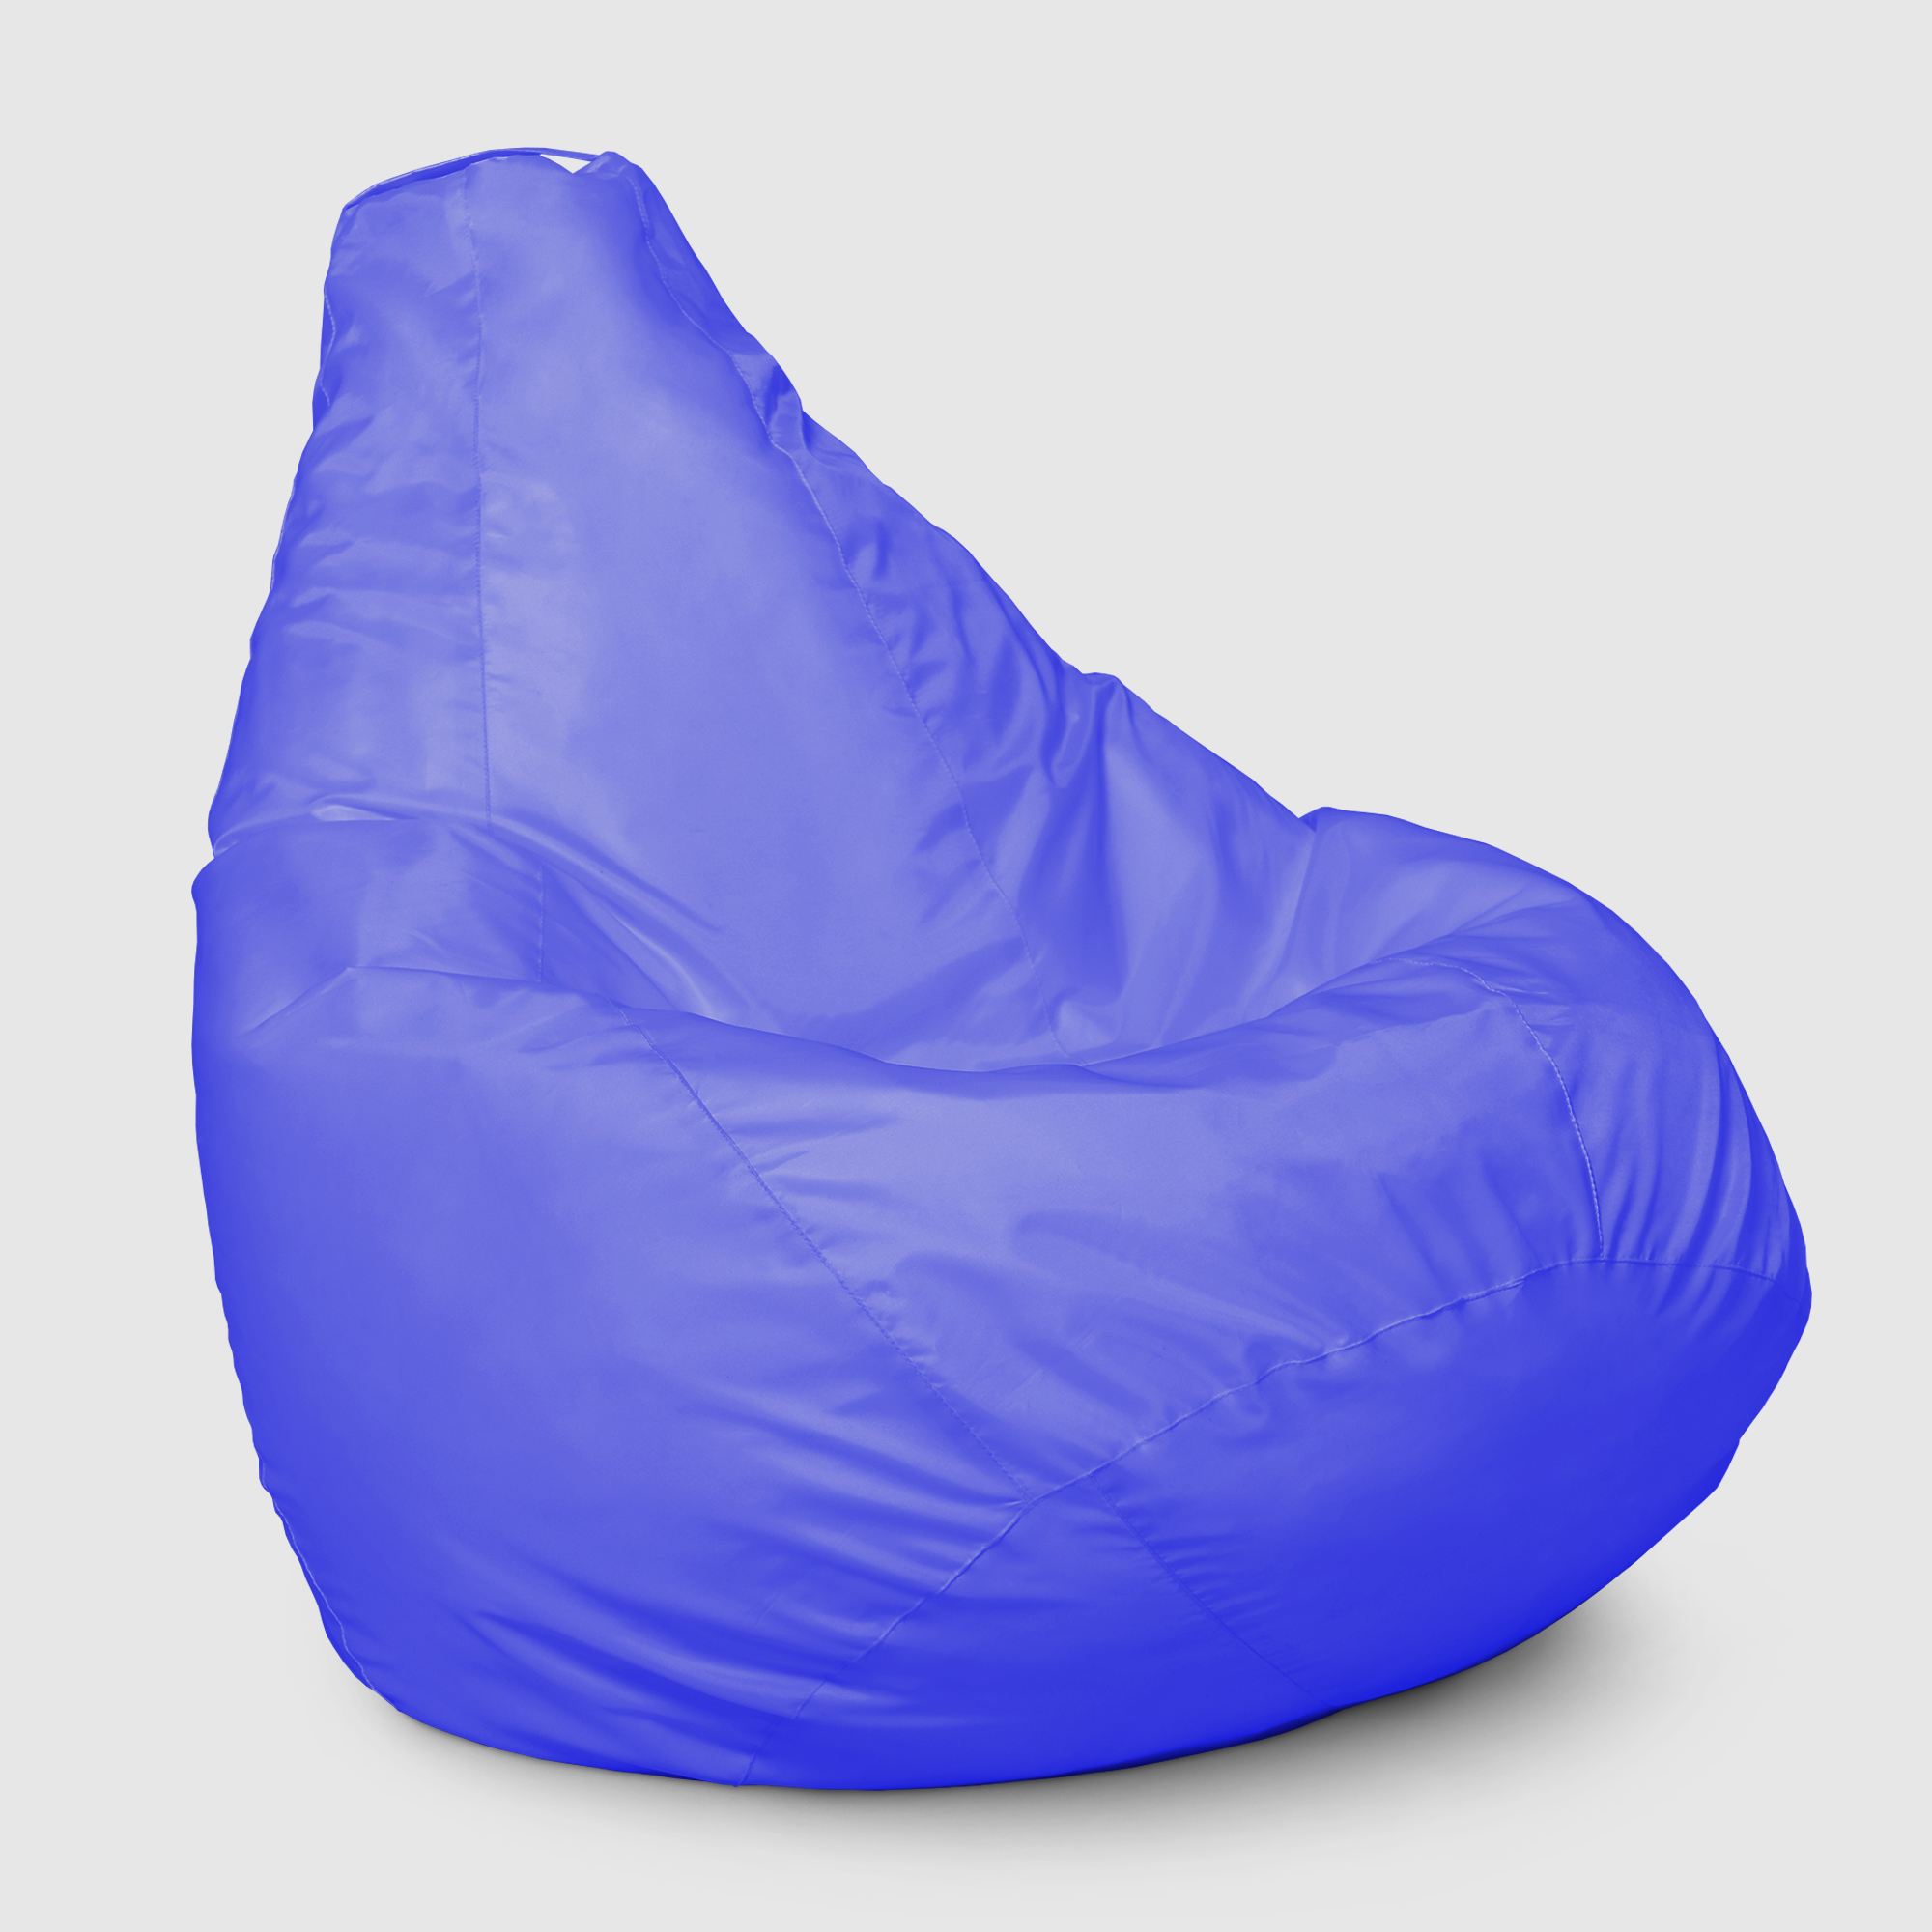 Кресло мешок Dreambag Меган xl Синее 85х85х125 см кресло мешок dreambag меган xl голубое 85х85х125см